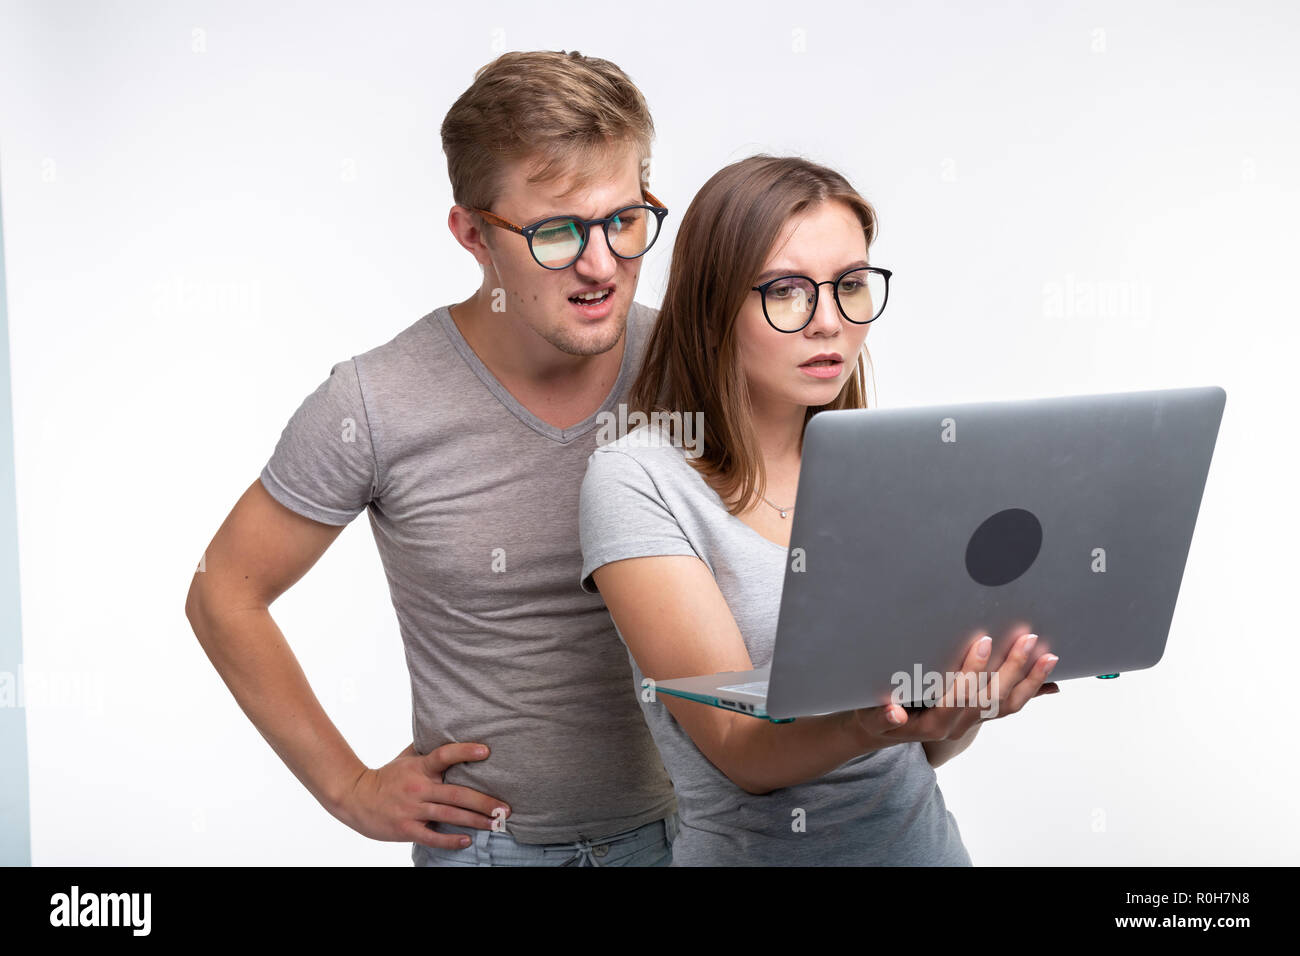 Menschen und Bildung Konzept - zwei jungen Studenten in Laptop auf weißem Hintergrund Stockfoto